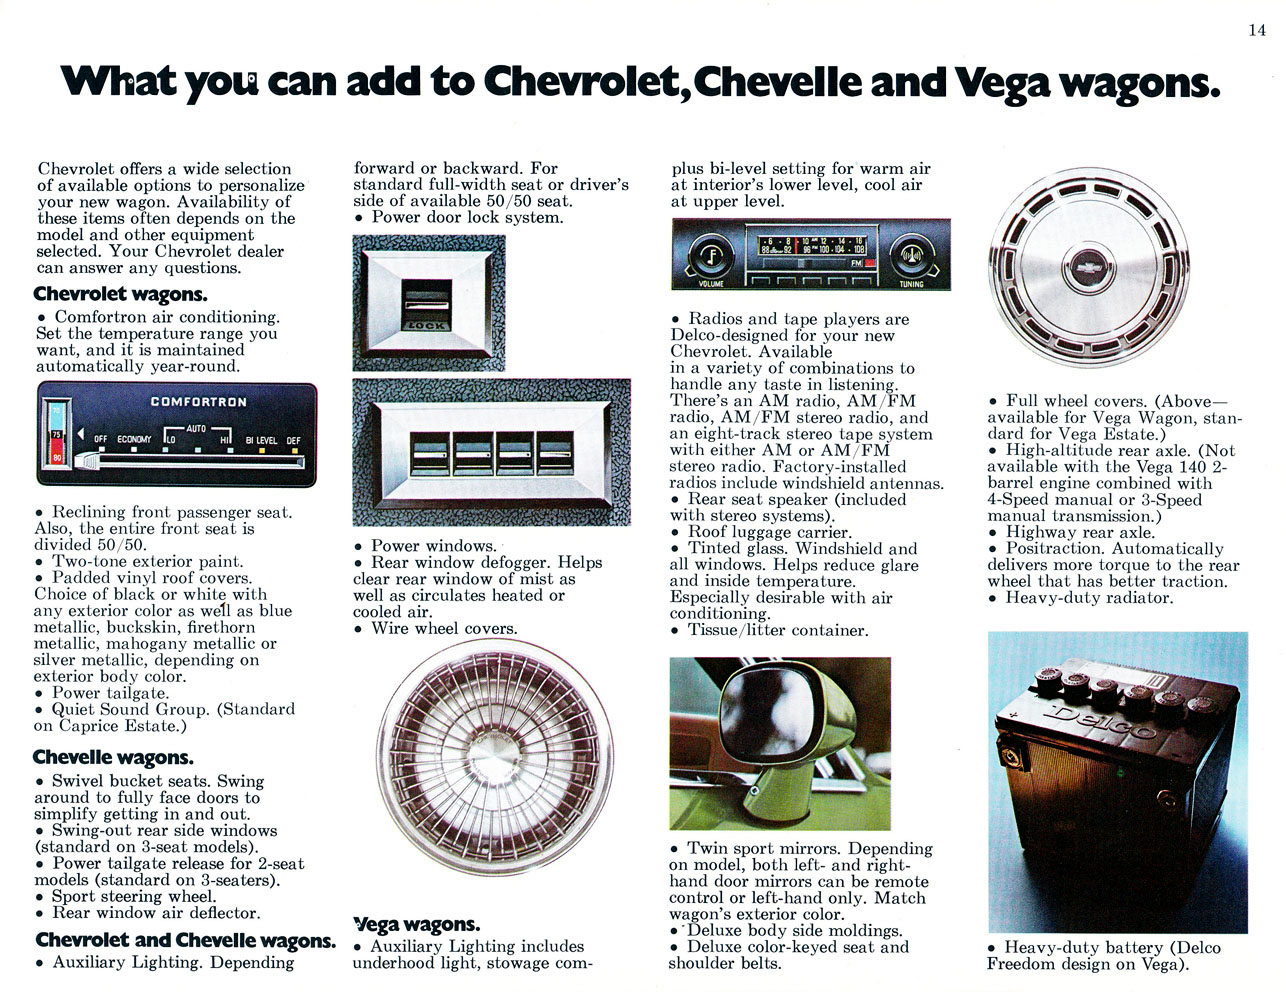 1976_Chevrolet_Wagons_Rev-14